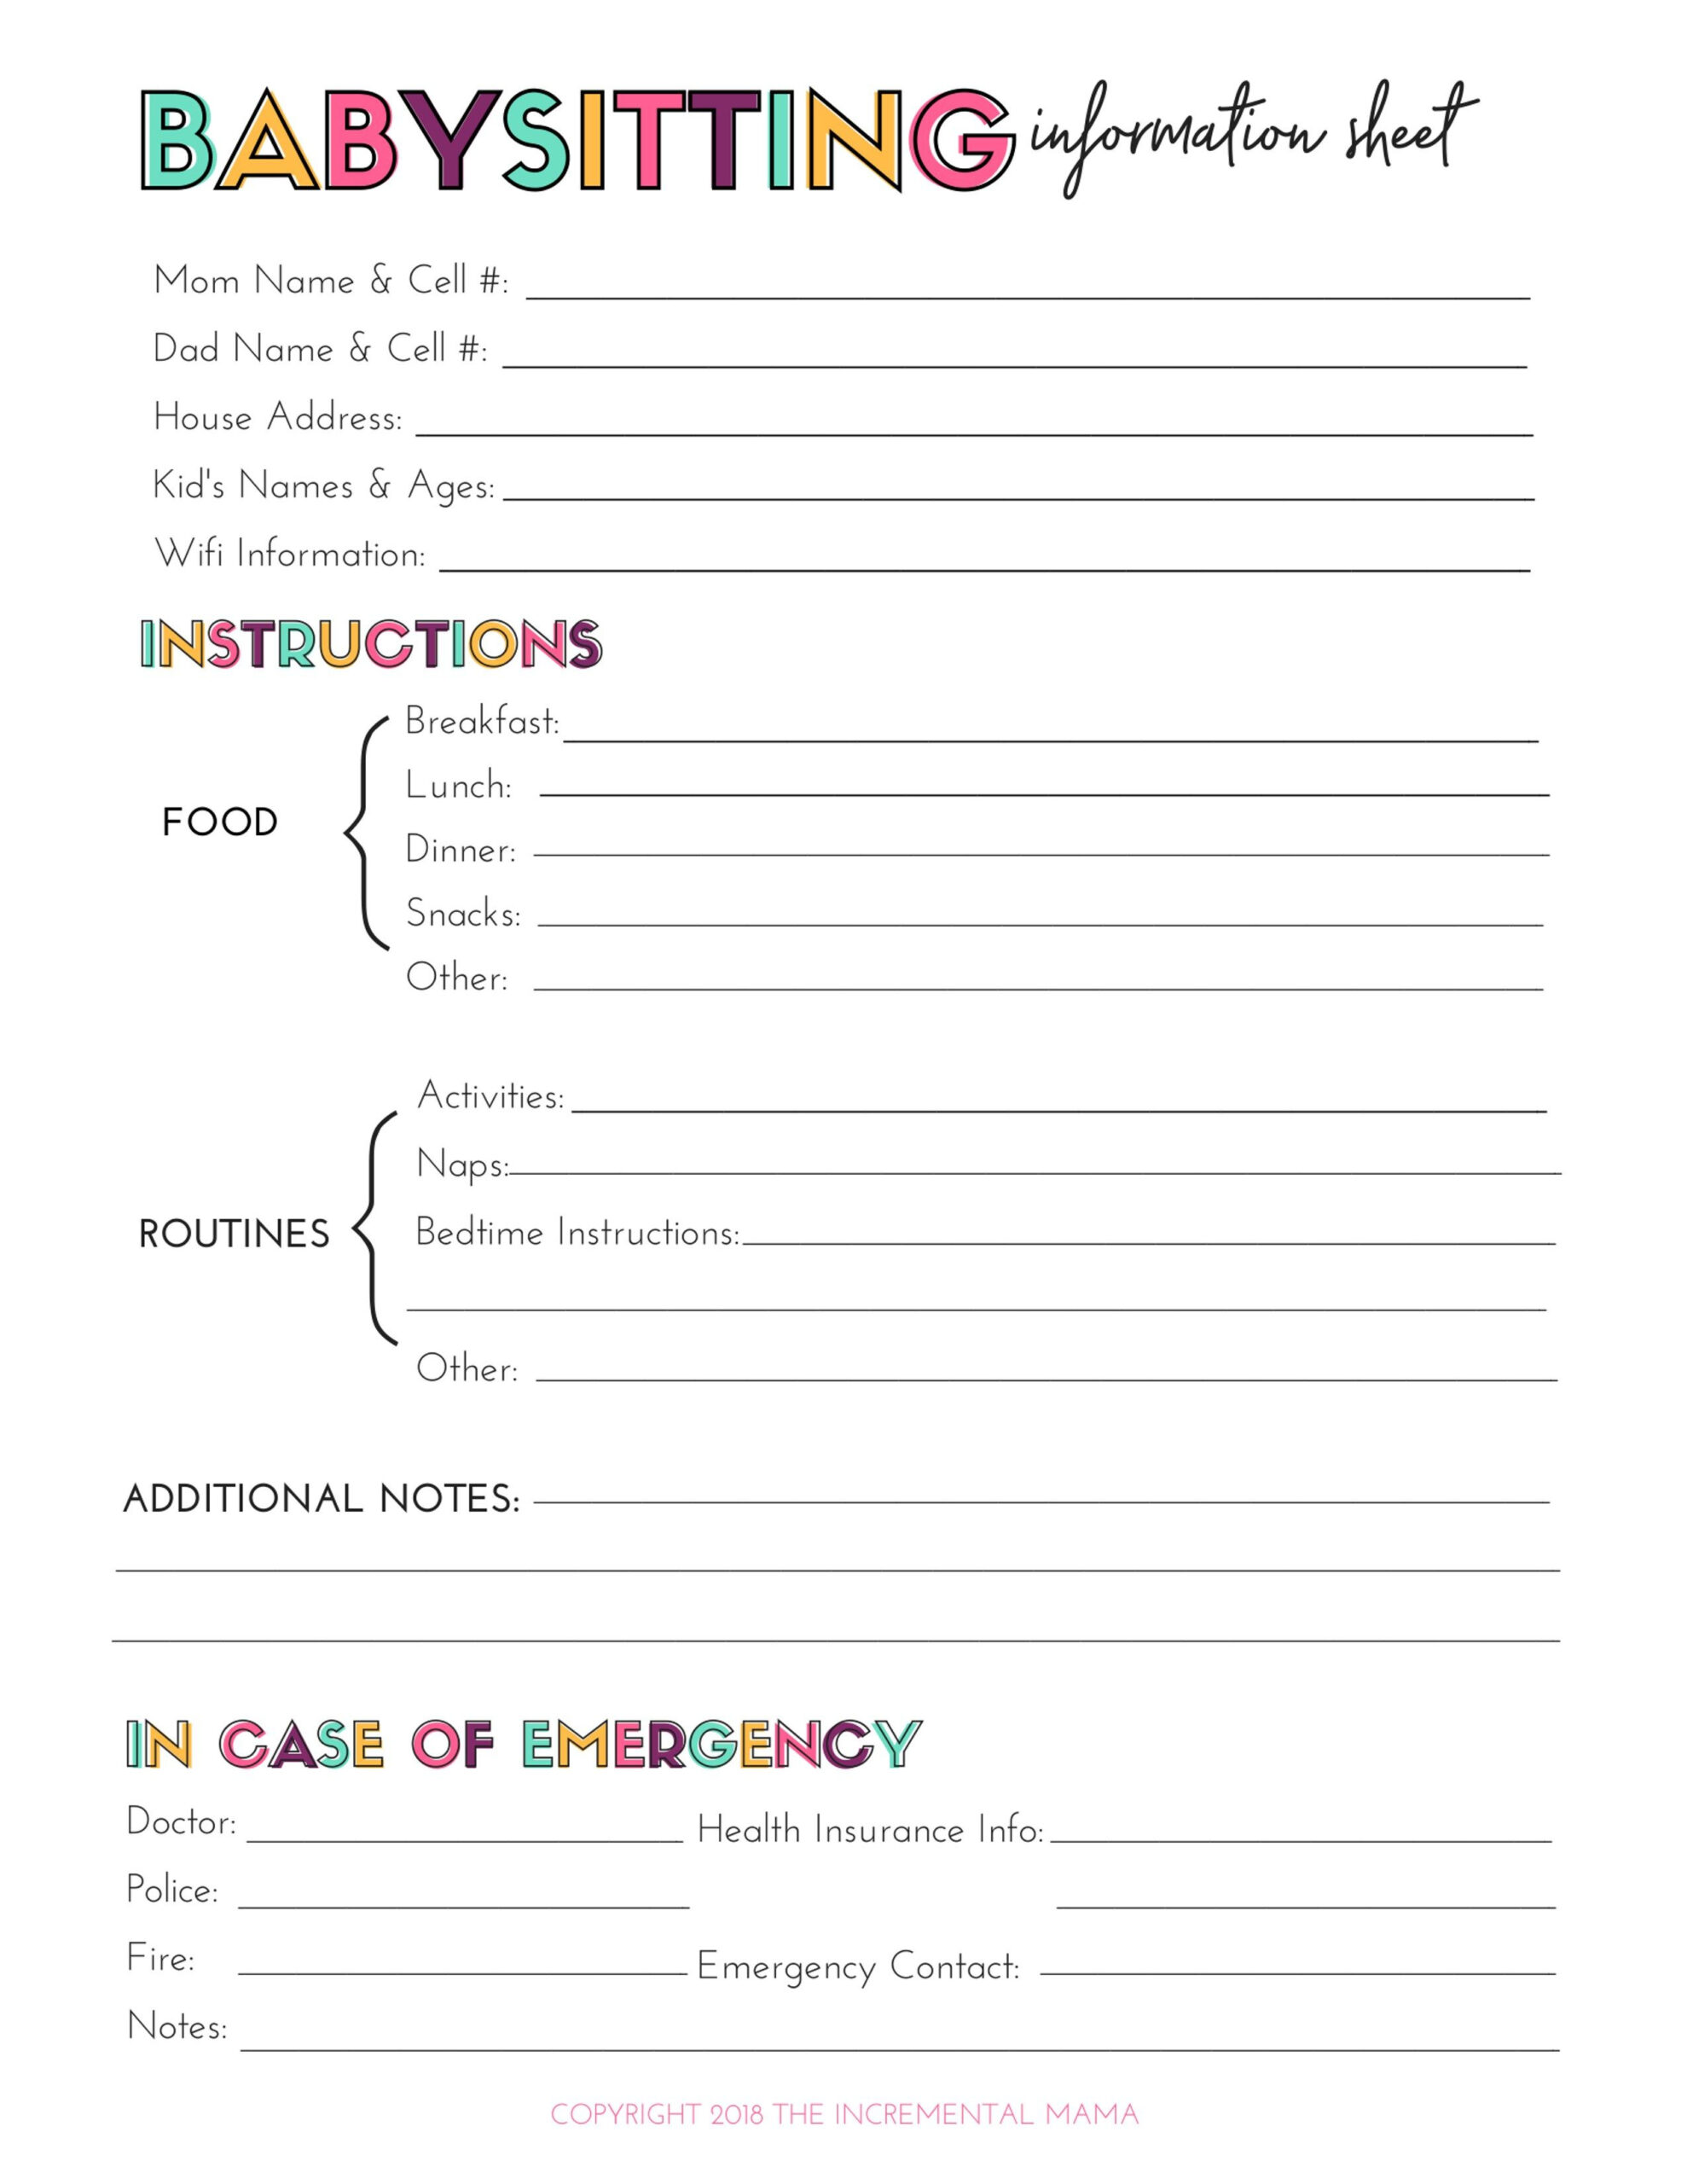 Free Printable Babysitting Information Sheet | Babysitter within Babysitter Notes Free Printable